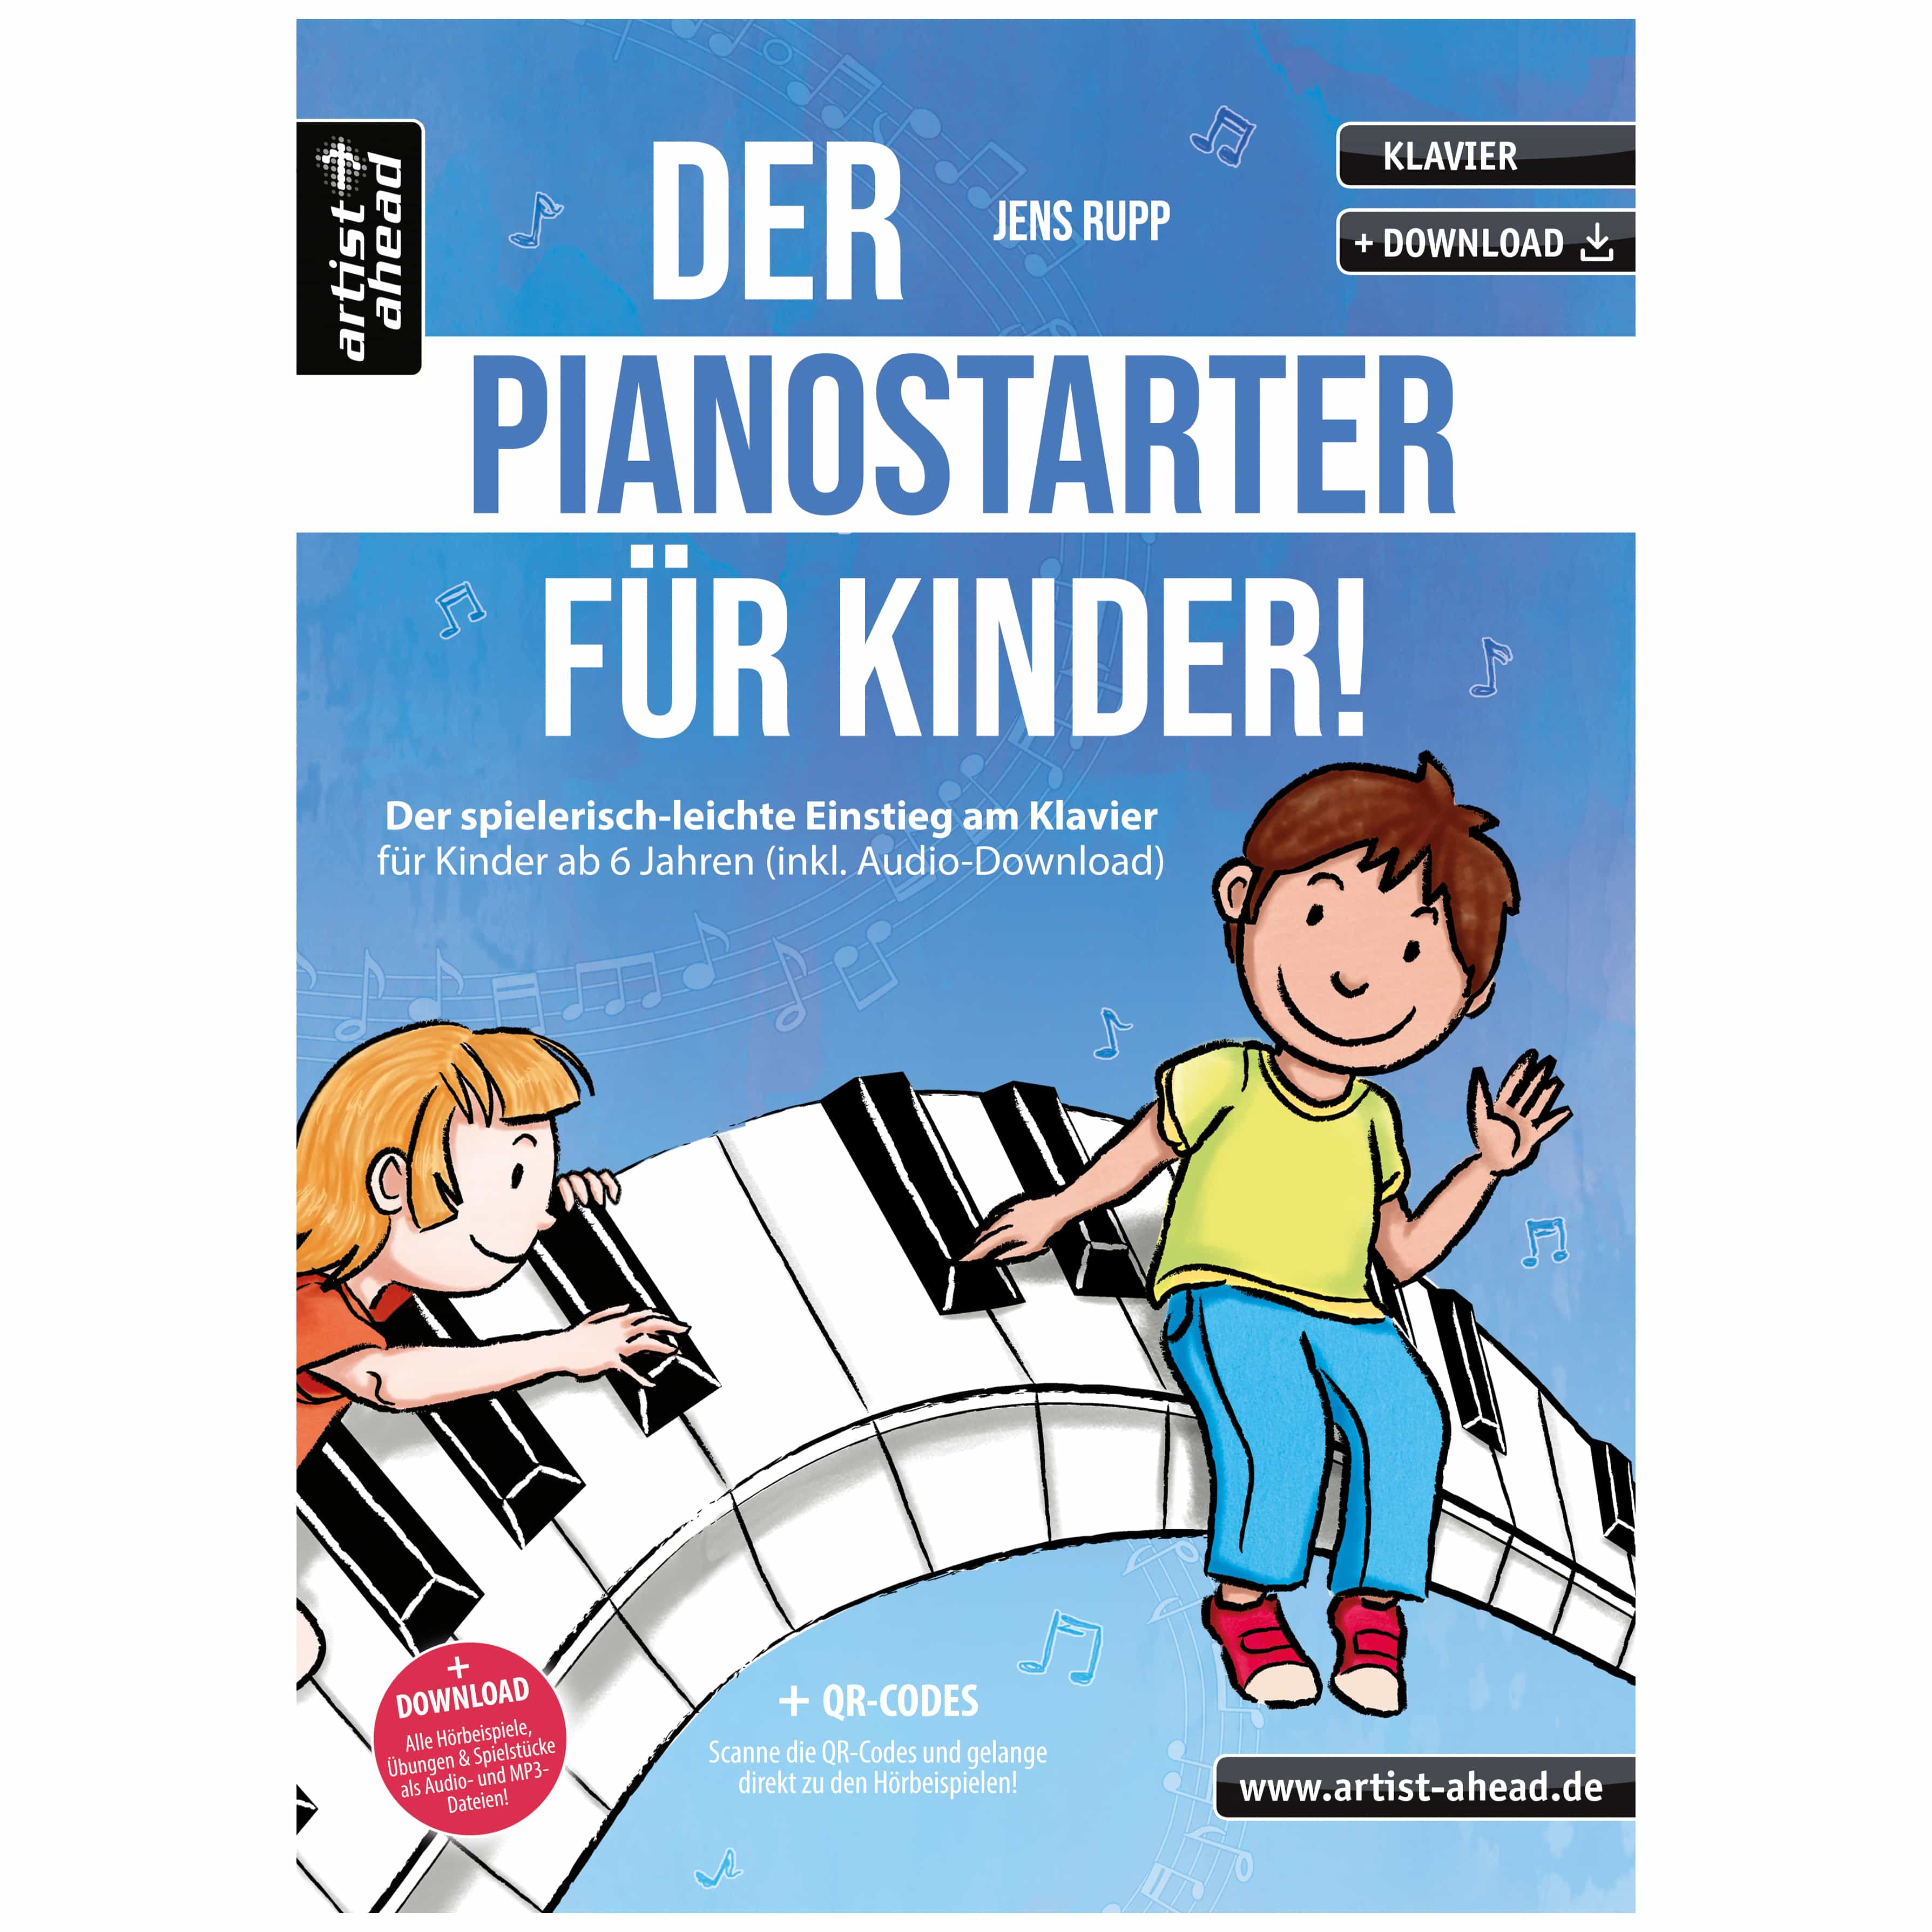 Artist Ahead Der Pianostarter für Kinder! - Jens Rupp